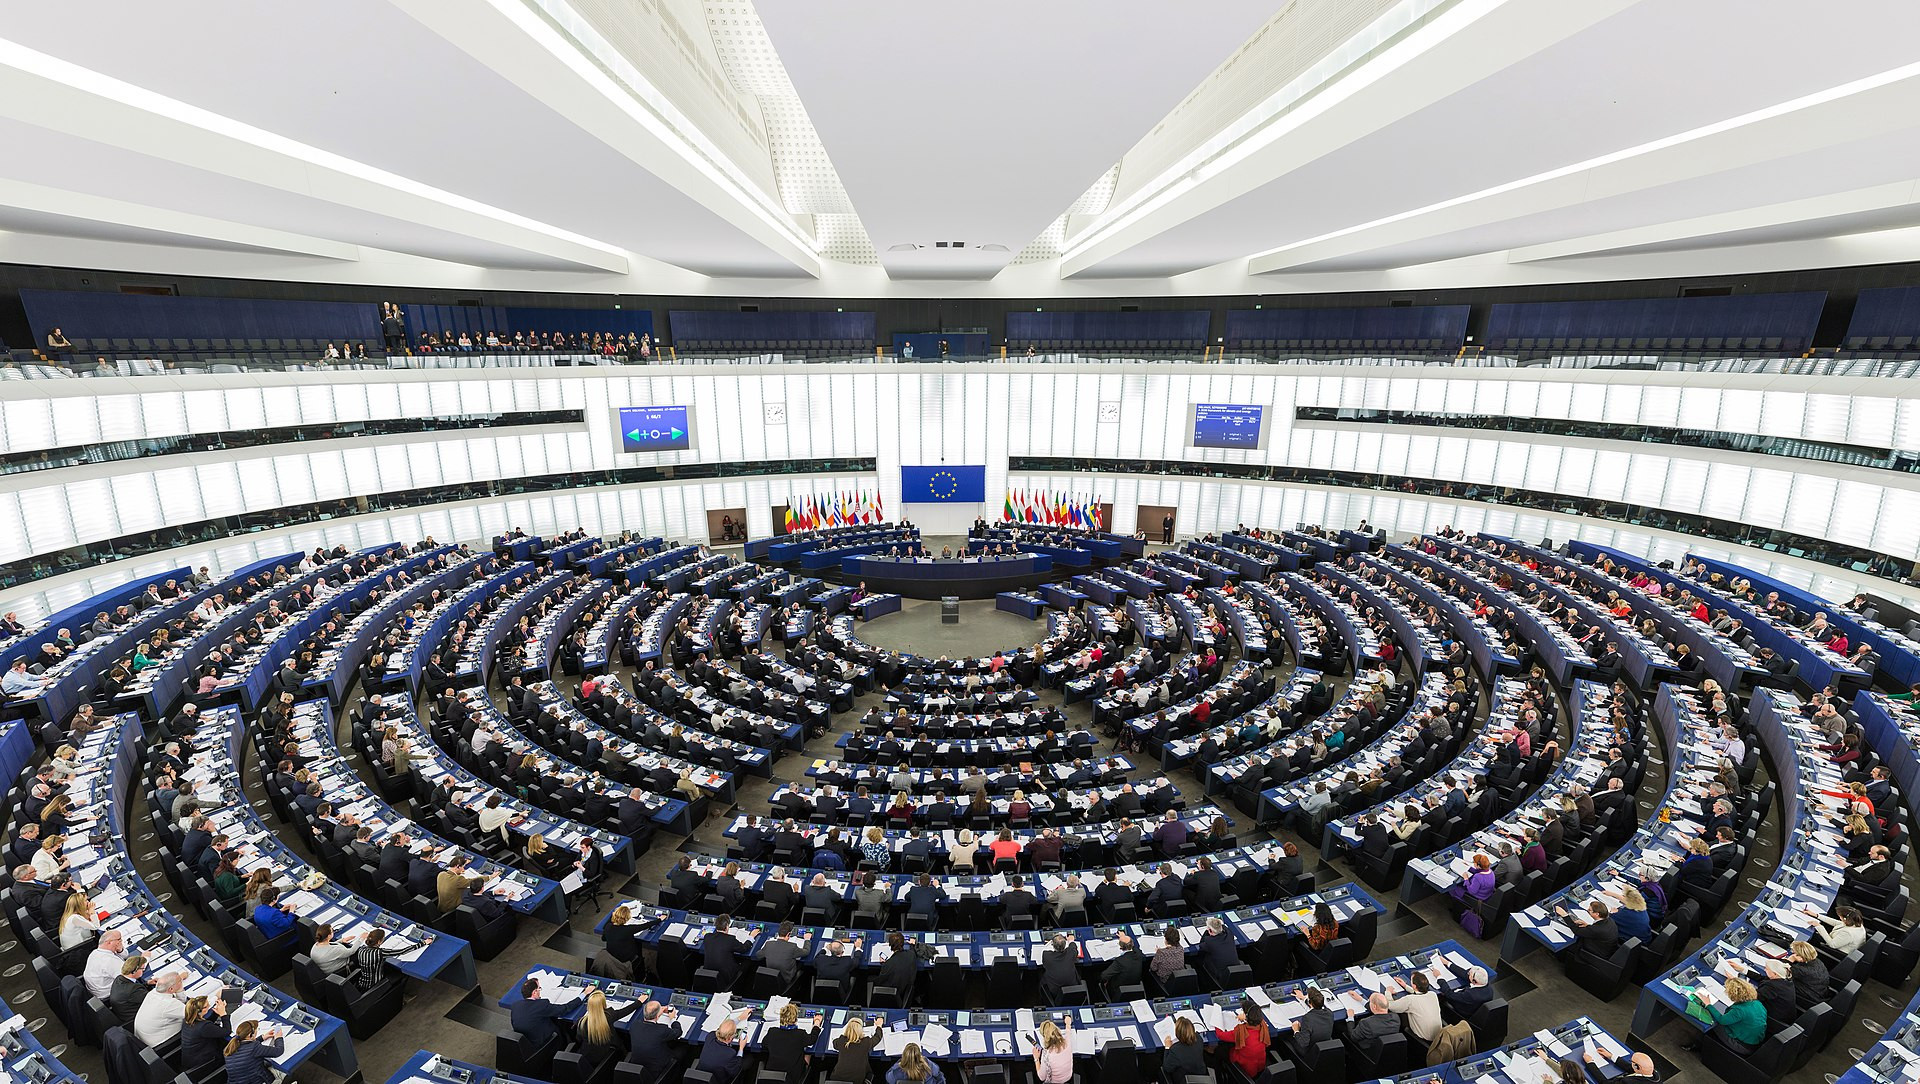 Βρυξέλλες – Συνεδρίαση για το κράτος δικαίου στην Ελλάδα: Σε άμυνα η κυβέρνηση, εντυπωσίασε η κατάθεση Τουλουπάκη